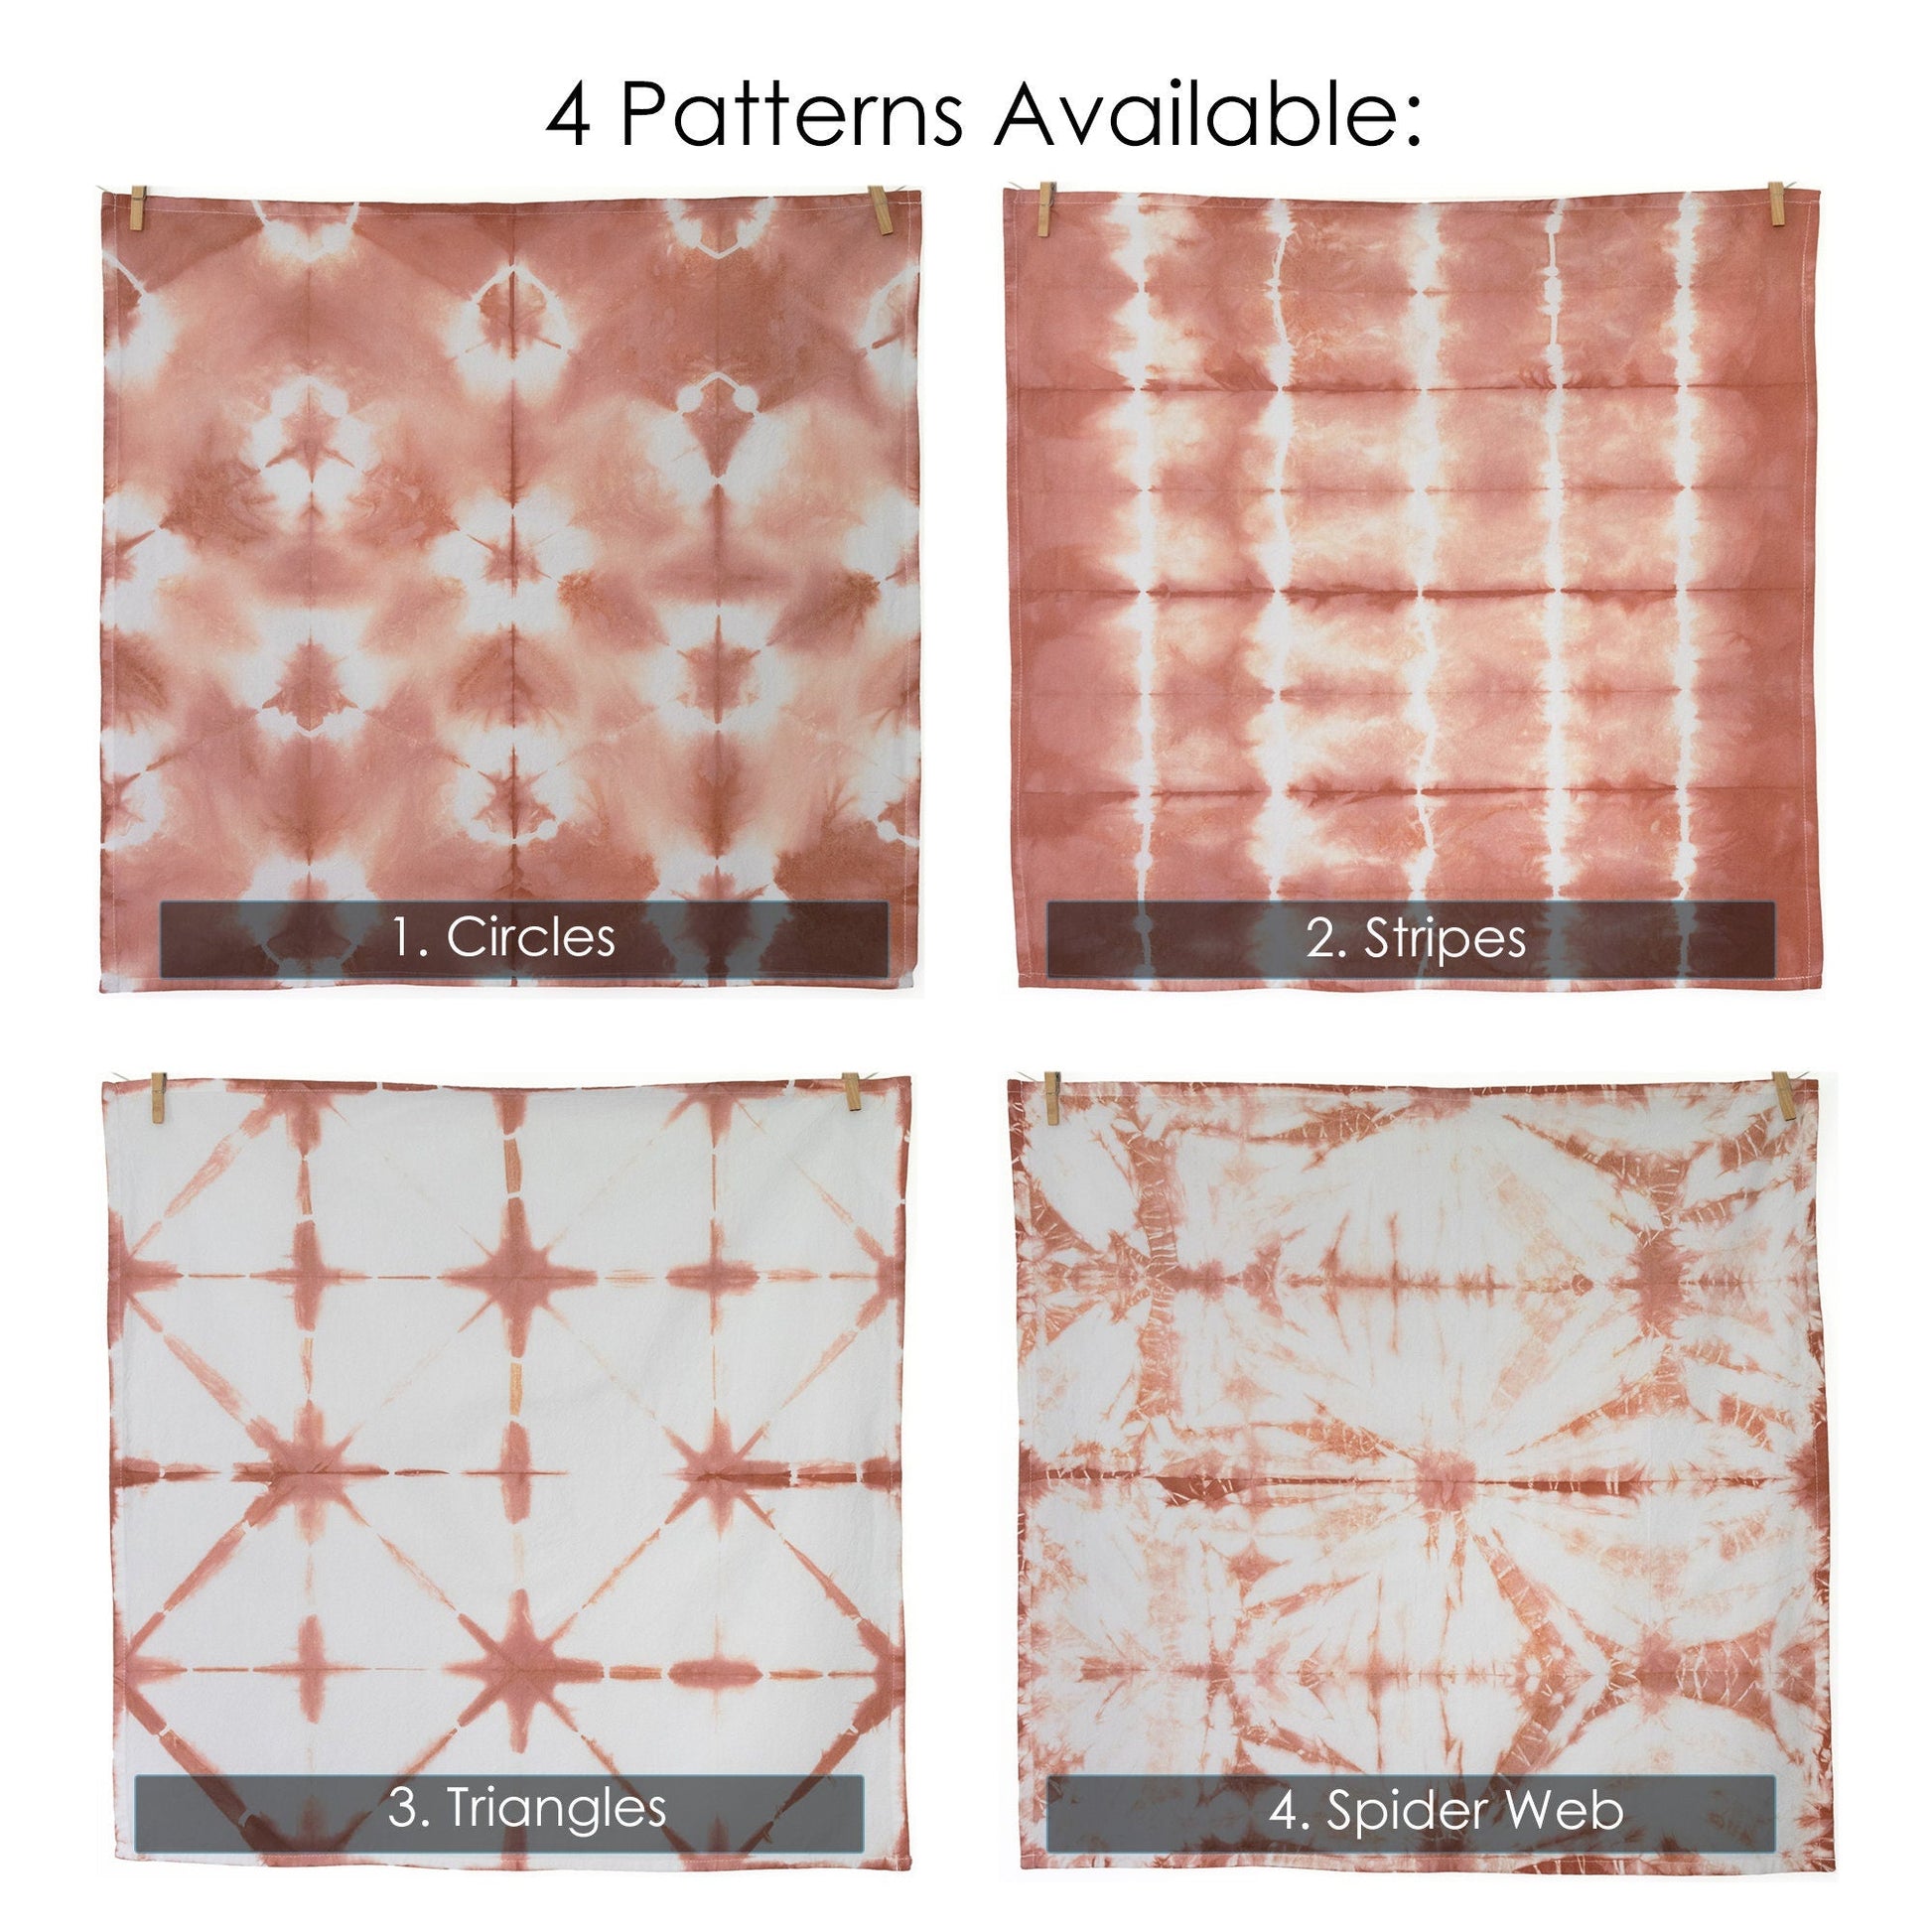 Terracotta Shibori Flour Sack Tea Towels - Sherri O Designs